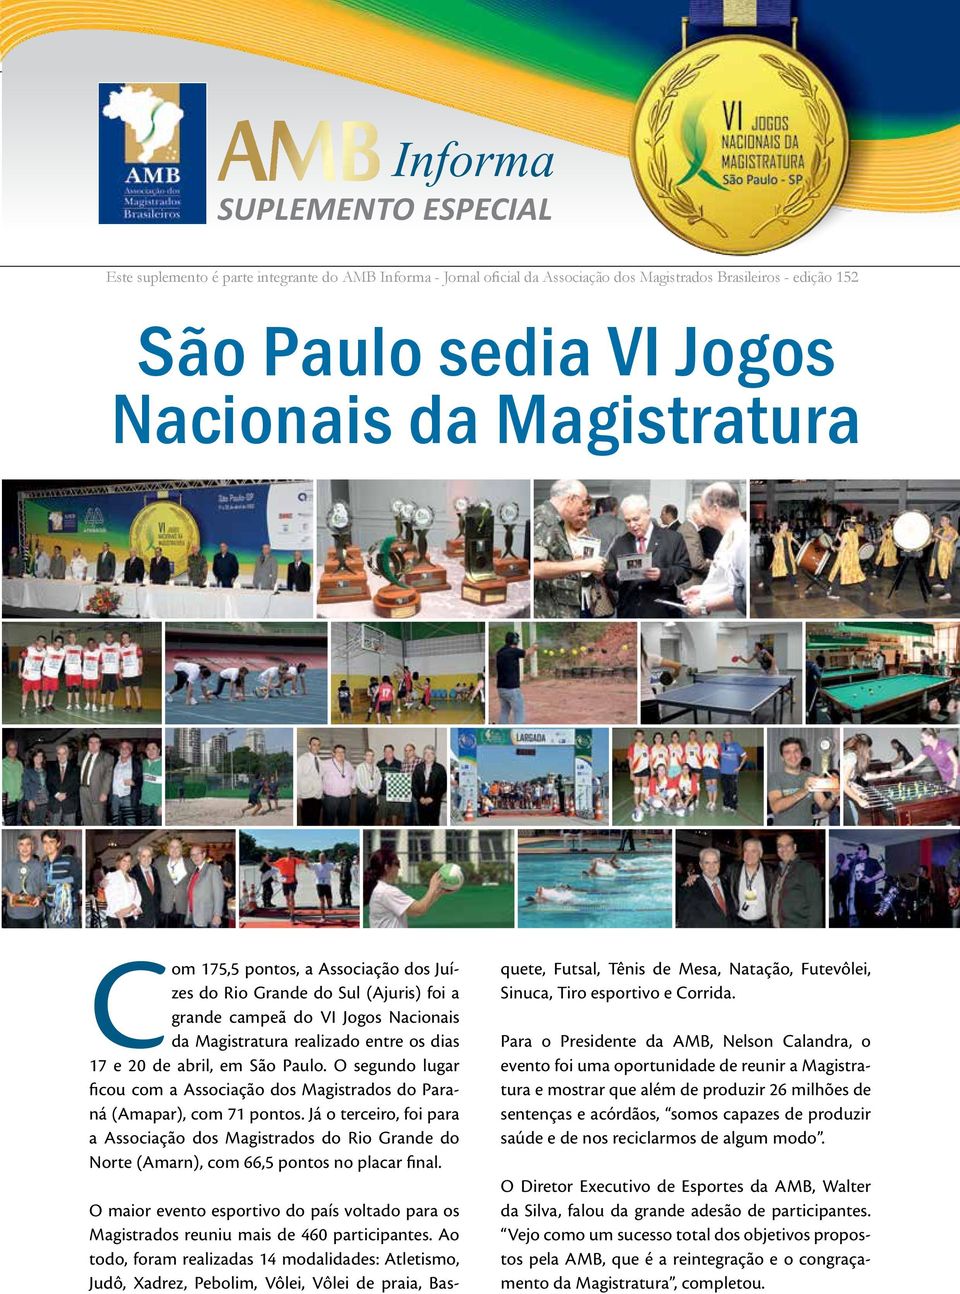 O segundo lugar ficou com a Associação dos Magistrados do Paraná (Amapar), com 71 pontos.